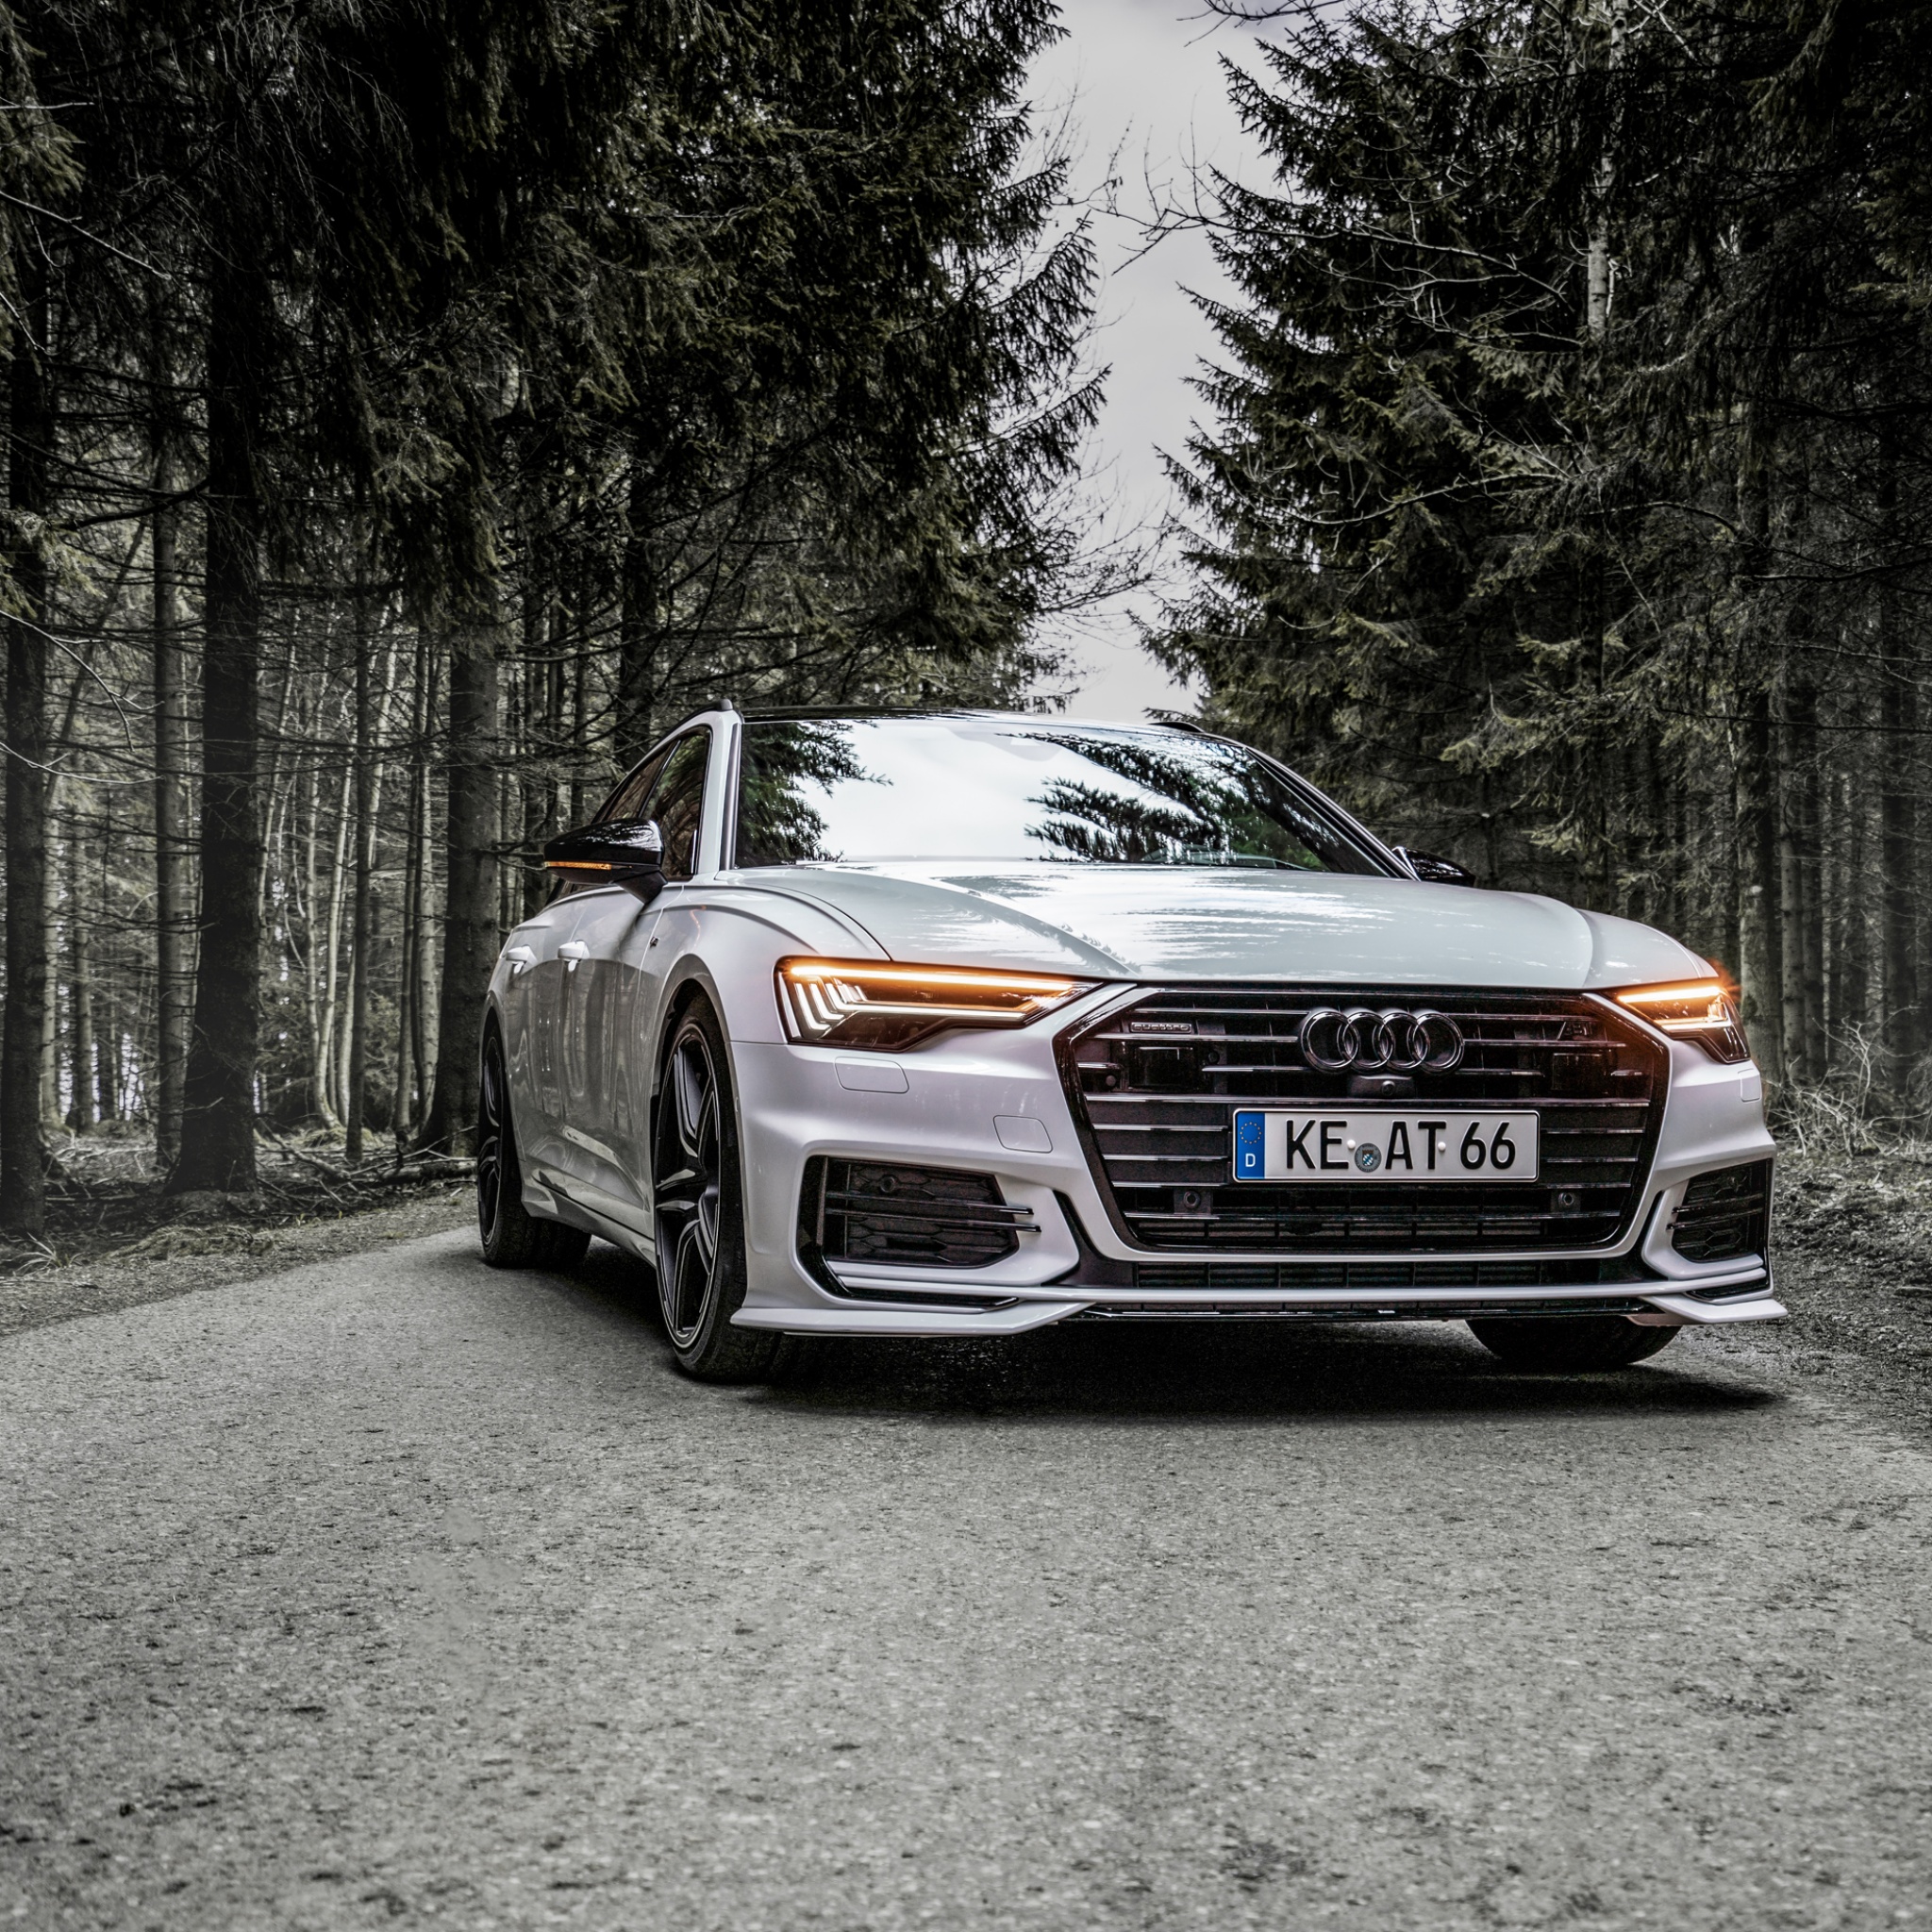 White Audi on Road · Free Stock Photo